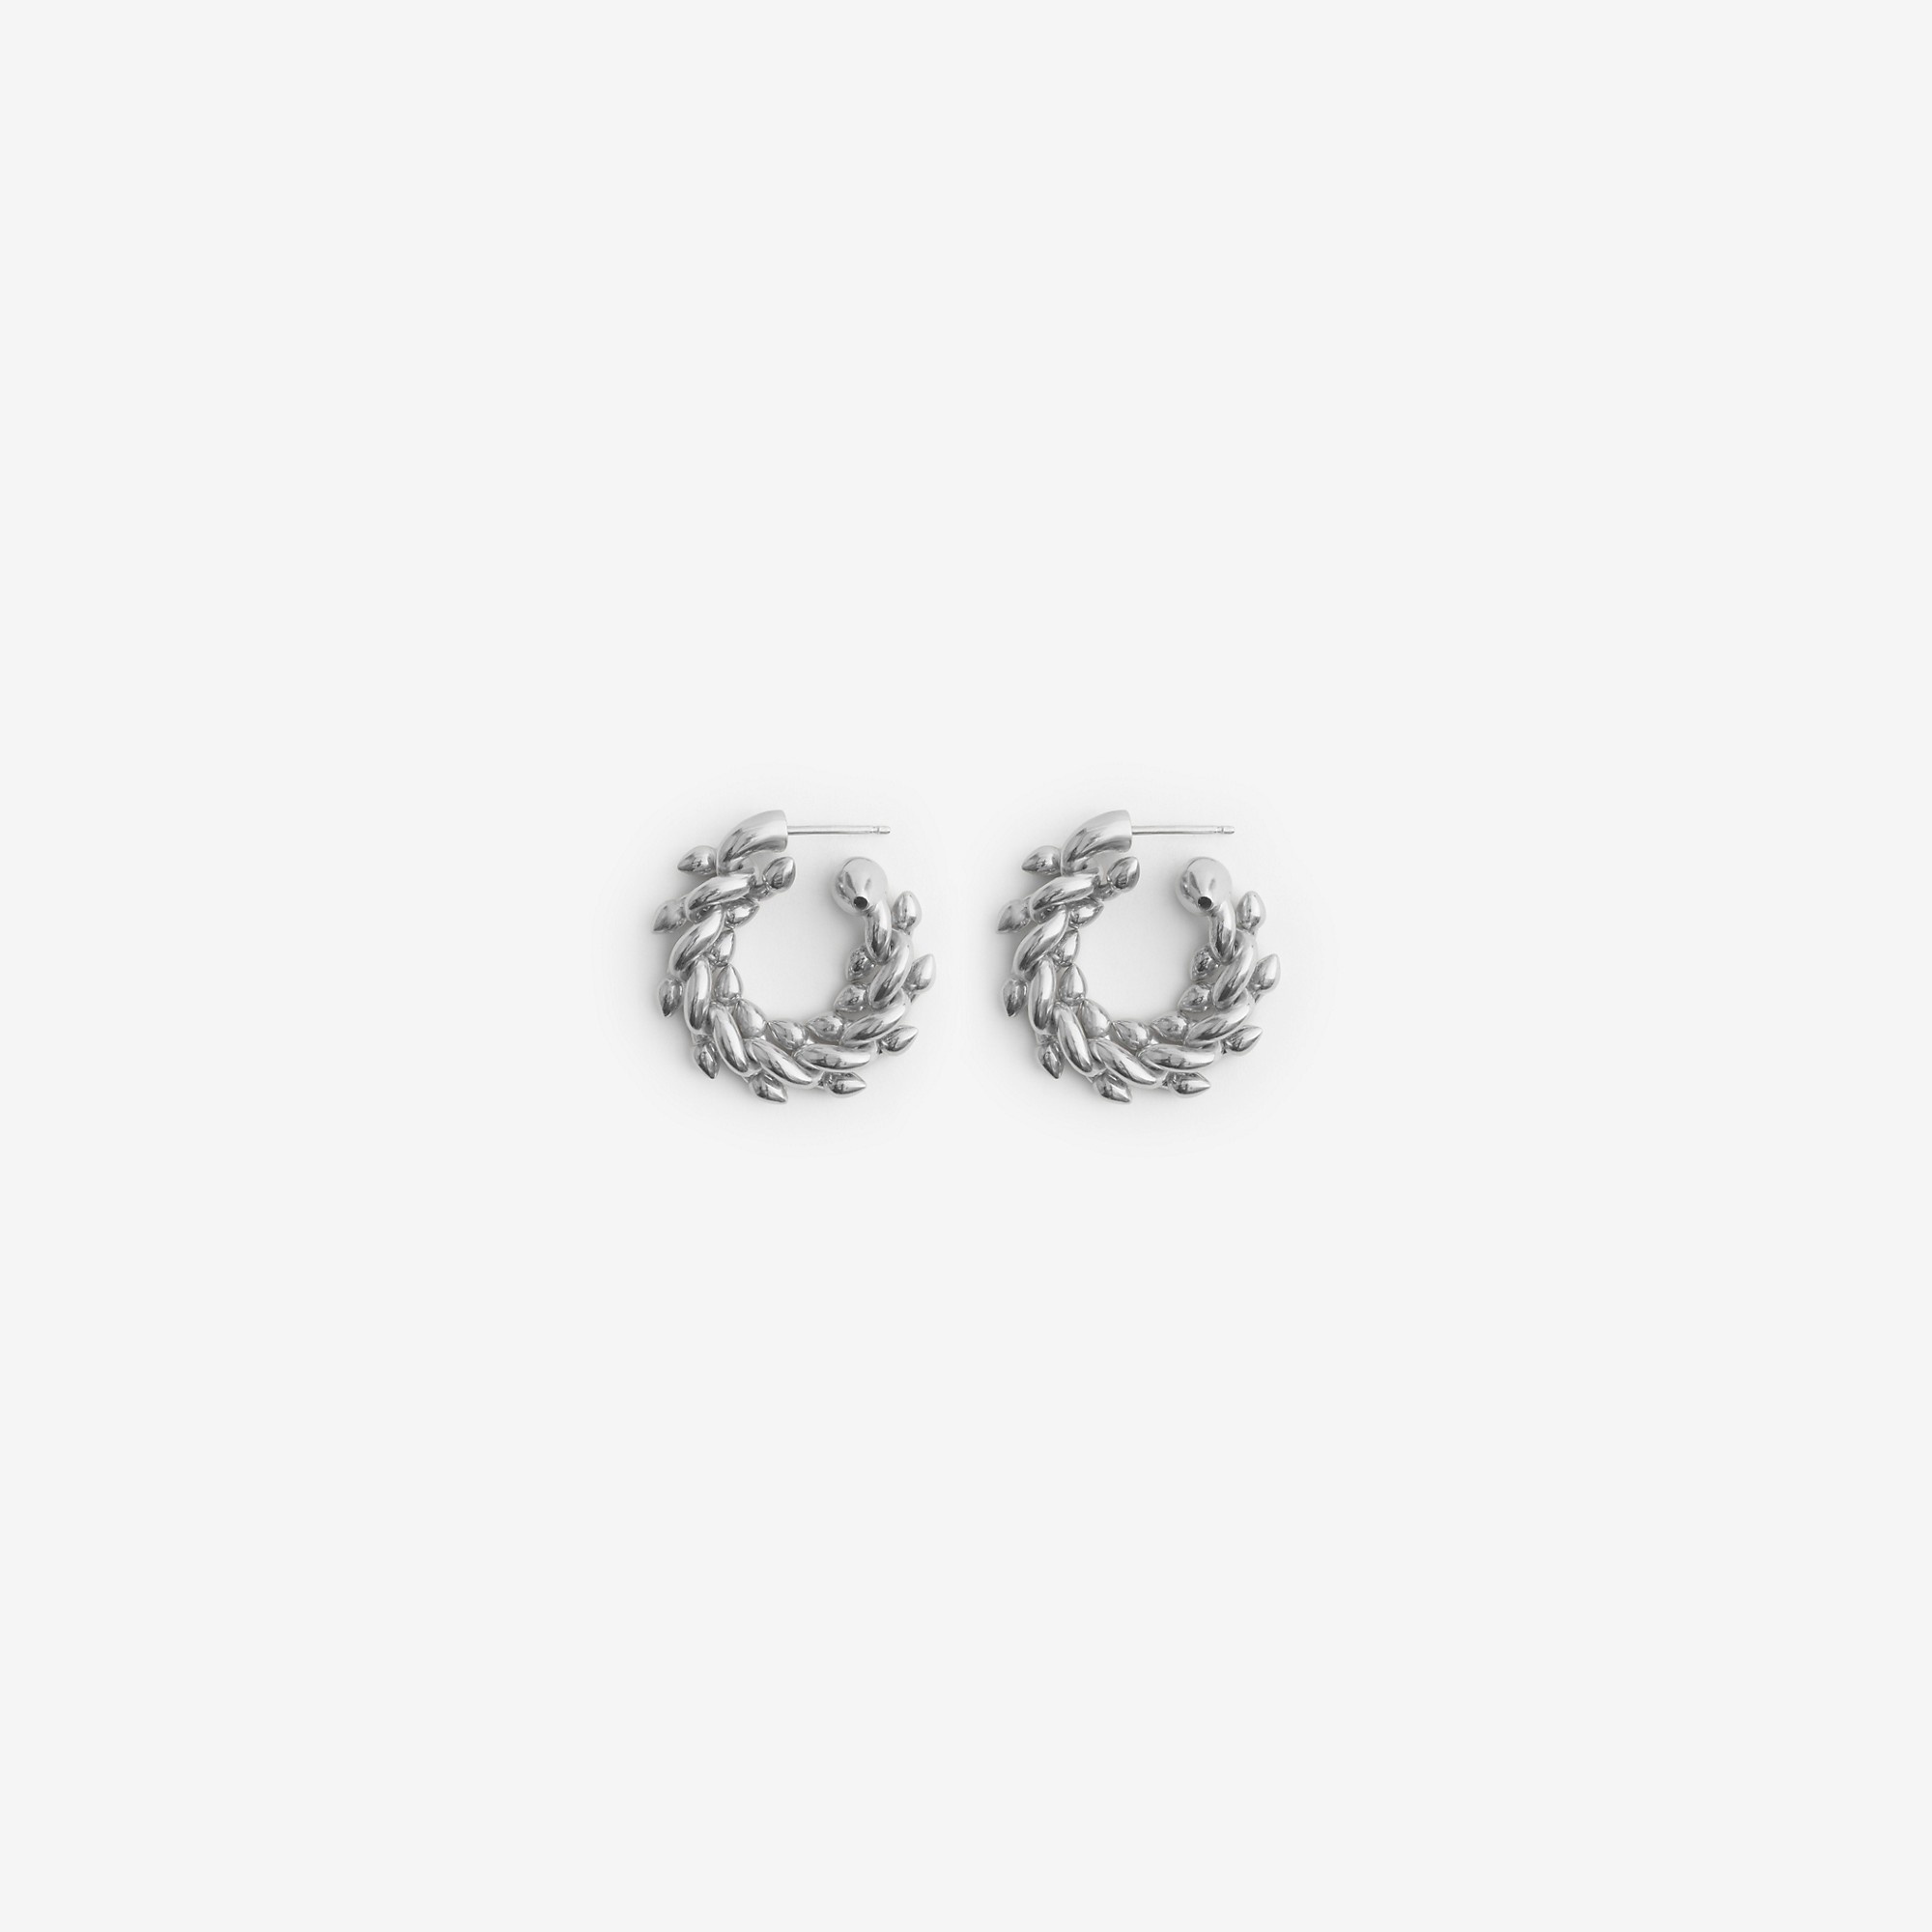 Silver Spear Chain Earrings - 1